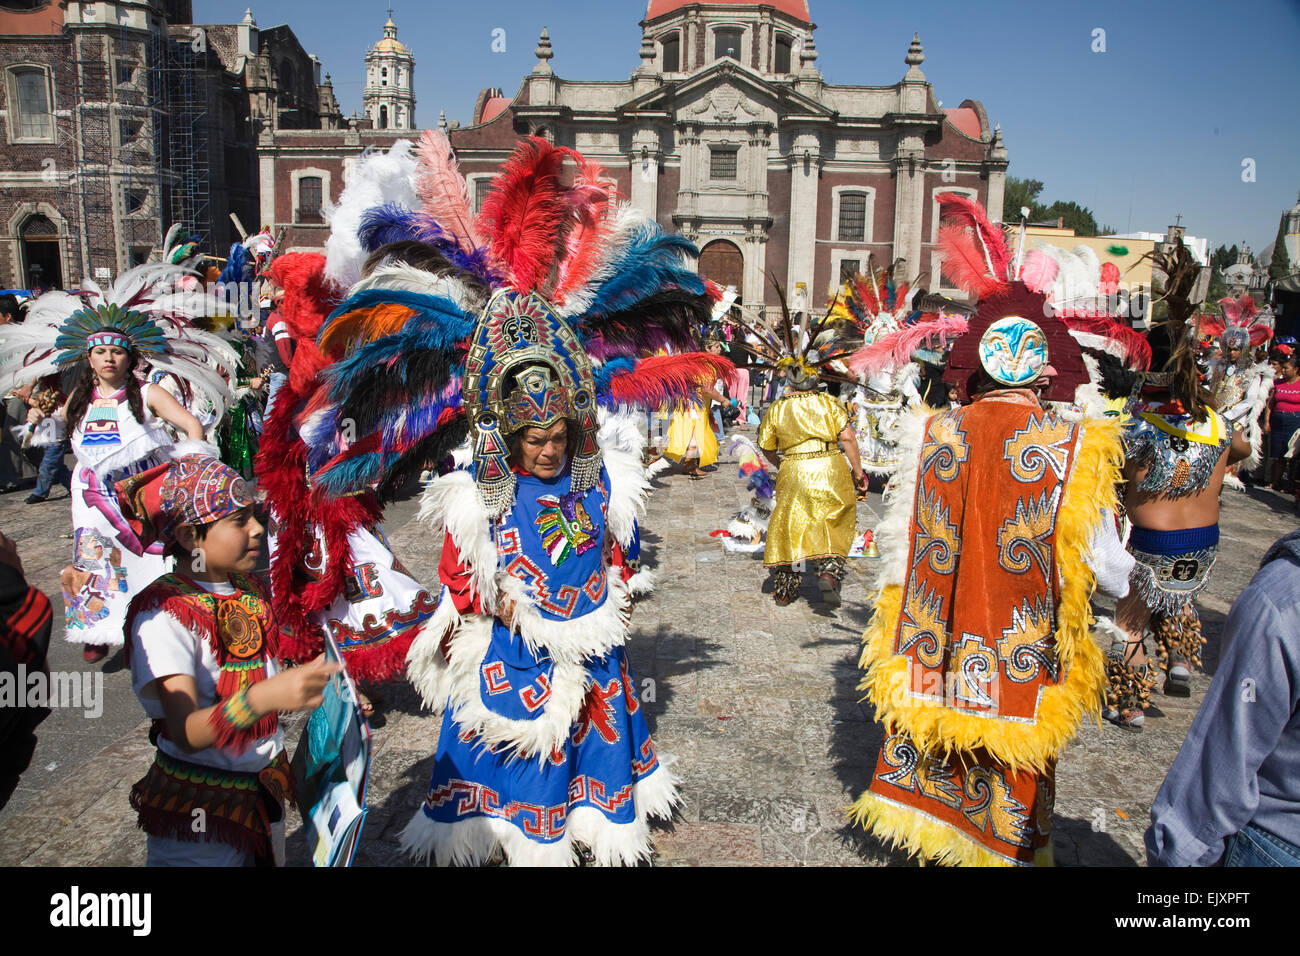 Une grande troupe de danseurs costumés aux couleurs vives célèbre la Vierge de Guadalupe fête le 12 décembre dans la ville de Mexico à l'avant Banque D'Images